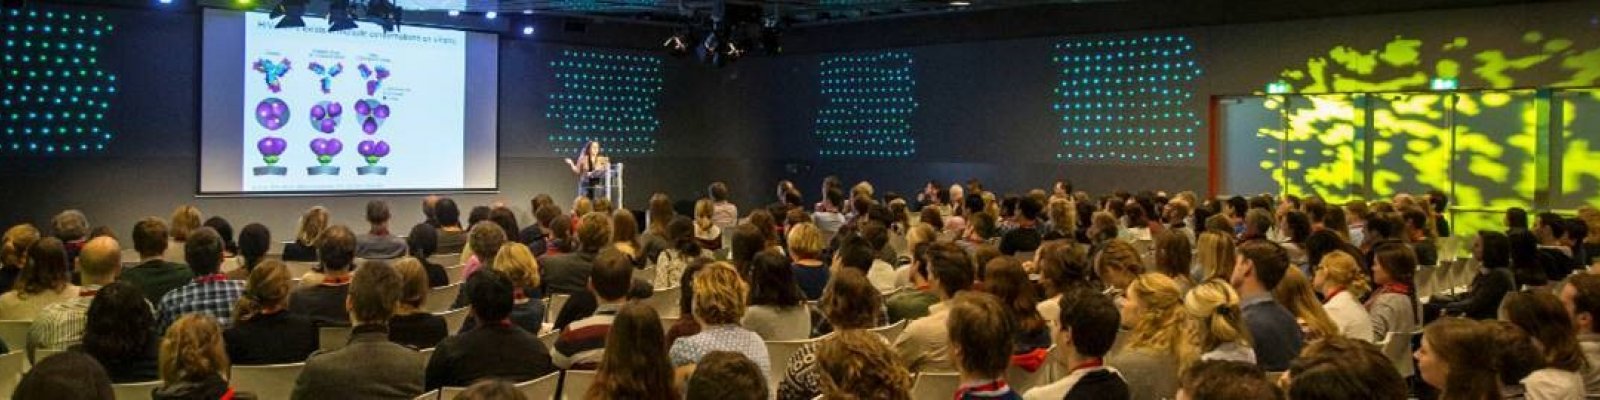 Zaal met sprekers en publiek tijdens Science for life conference